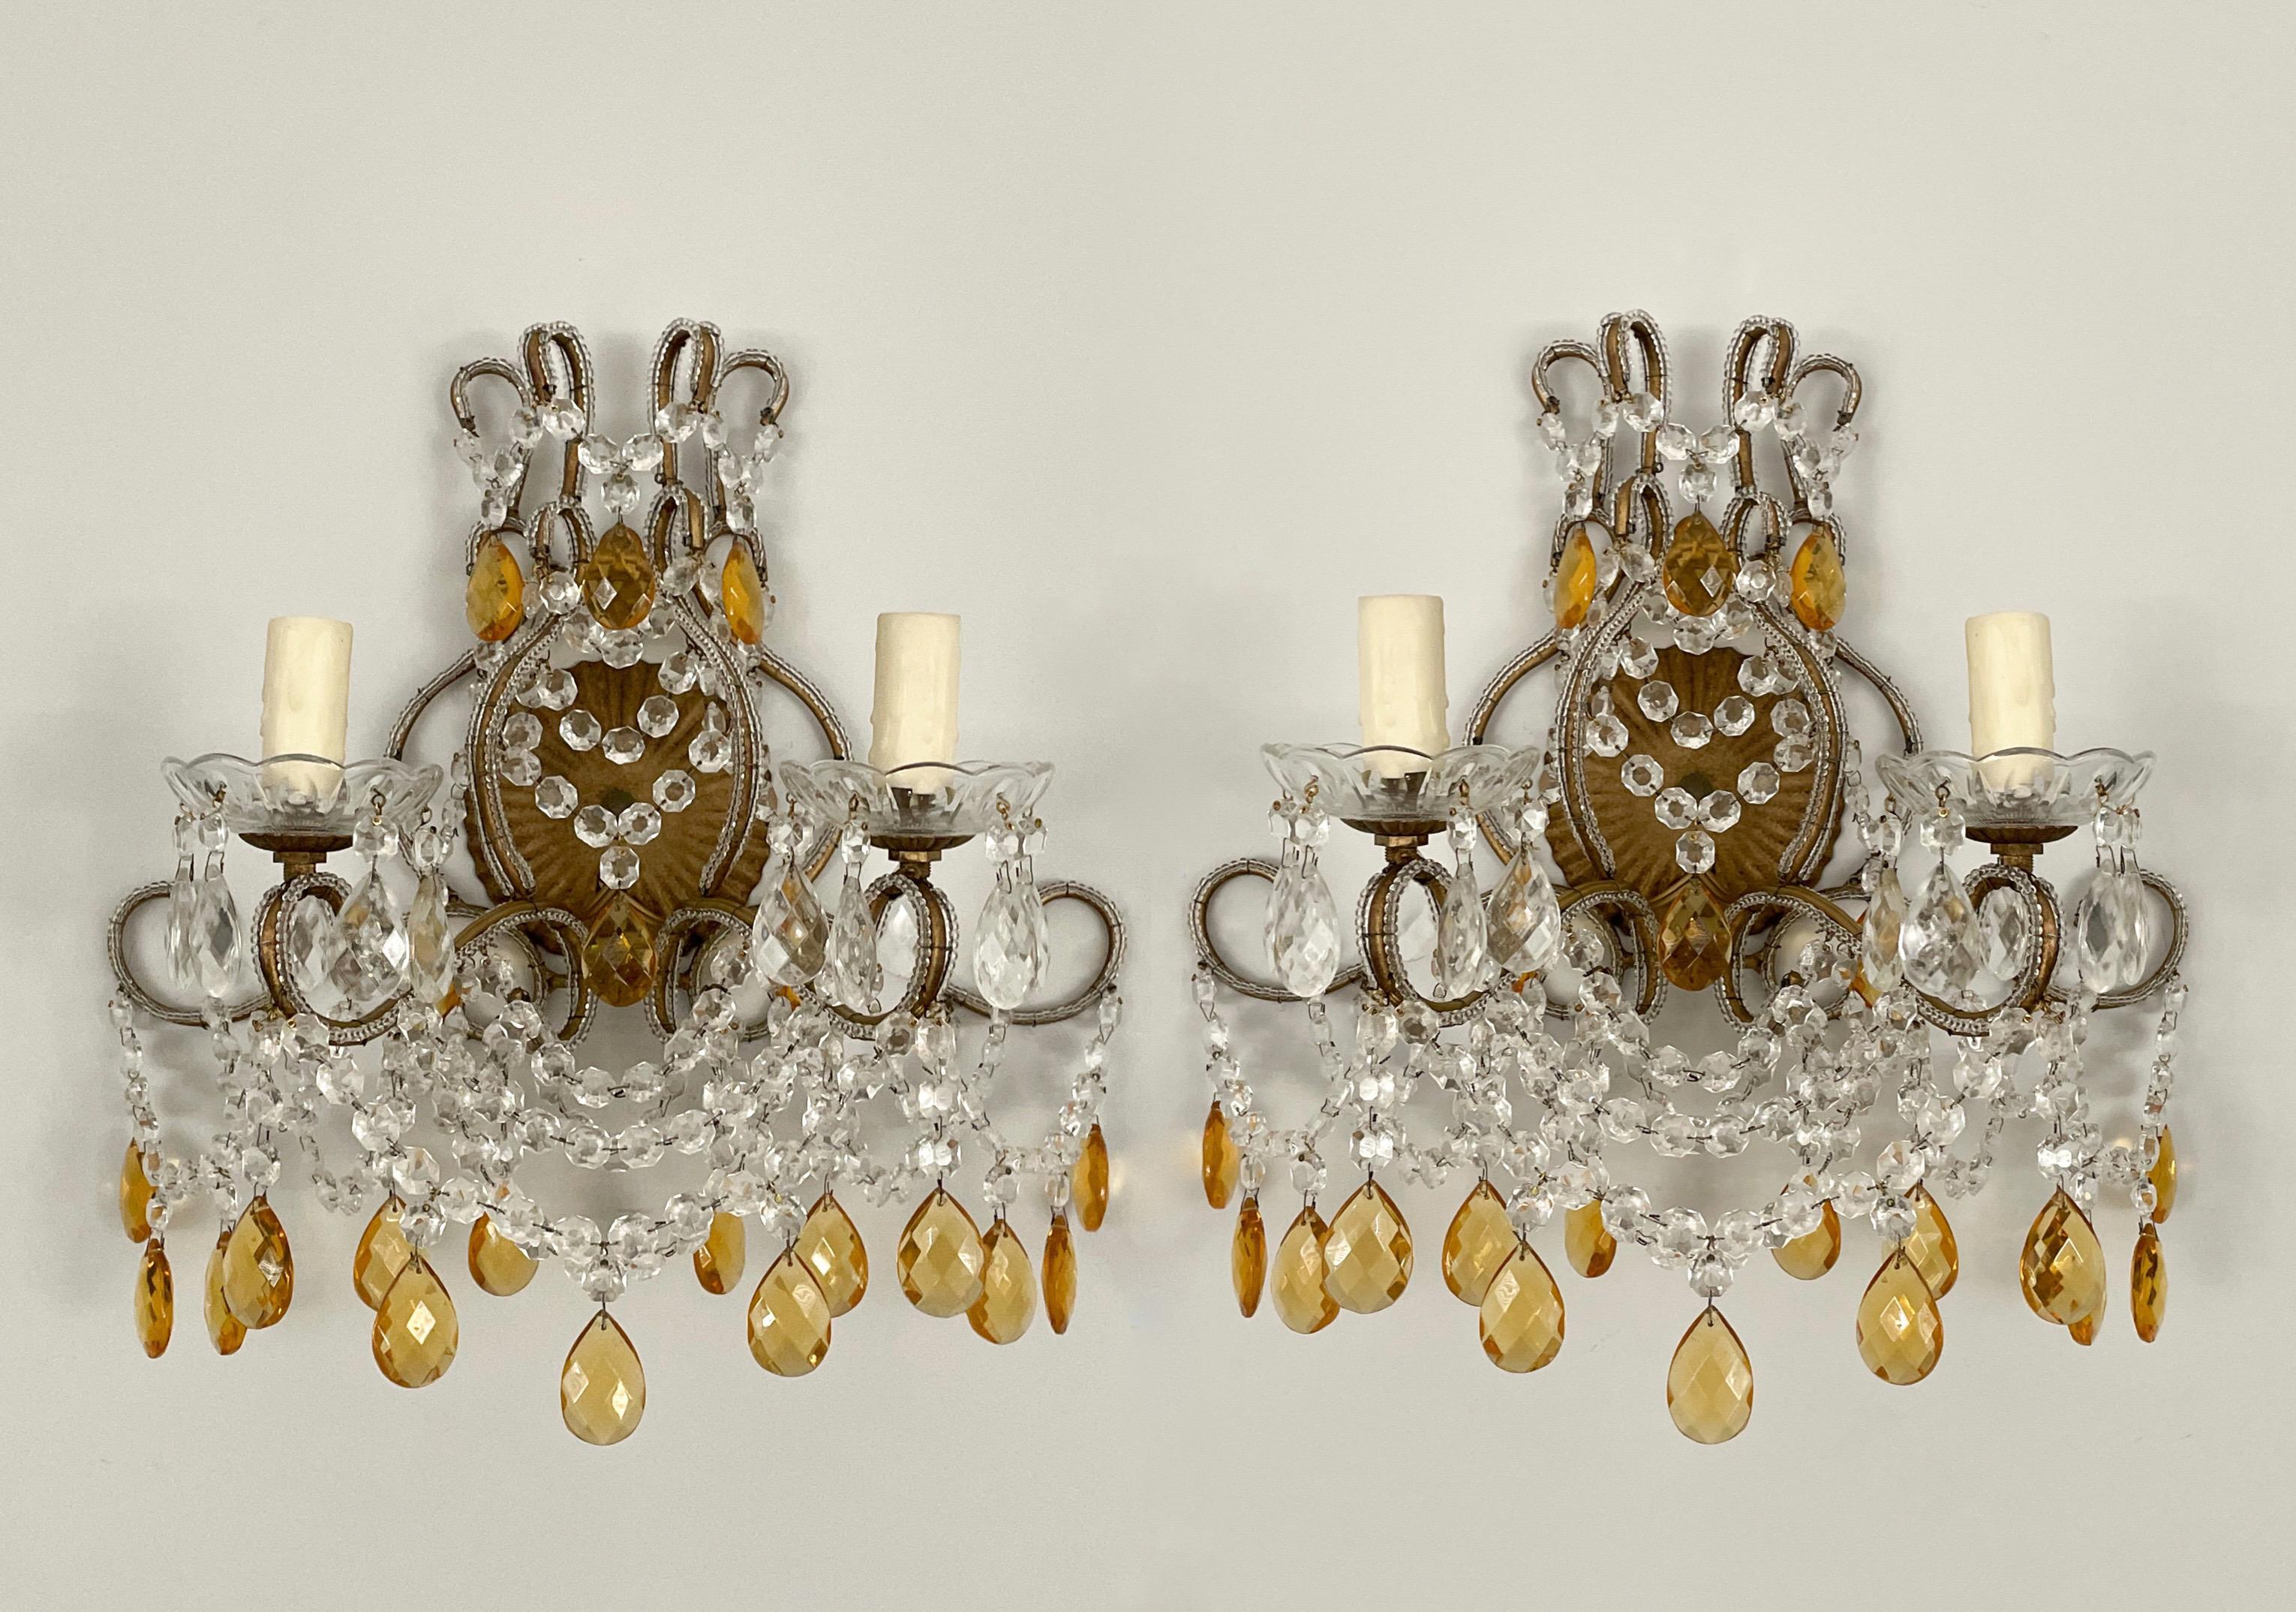 Sehr hübsches Paar italienischer Wandleuchter mit Perlen aus den 1960er Jahren.

Die Leuchter bestehen aus einem vergoldeten, geschwungenen Eisenrahmen mit klaren Kristallperlen und facettierten Prismen aus bernsteinfarbenem Glas. Die Farbe der